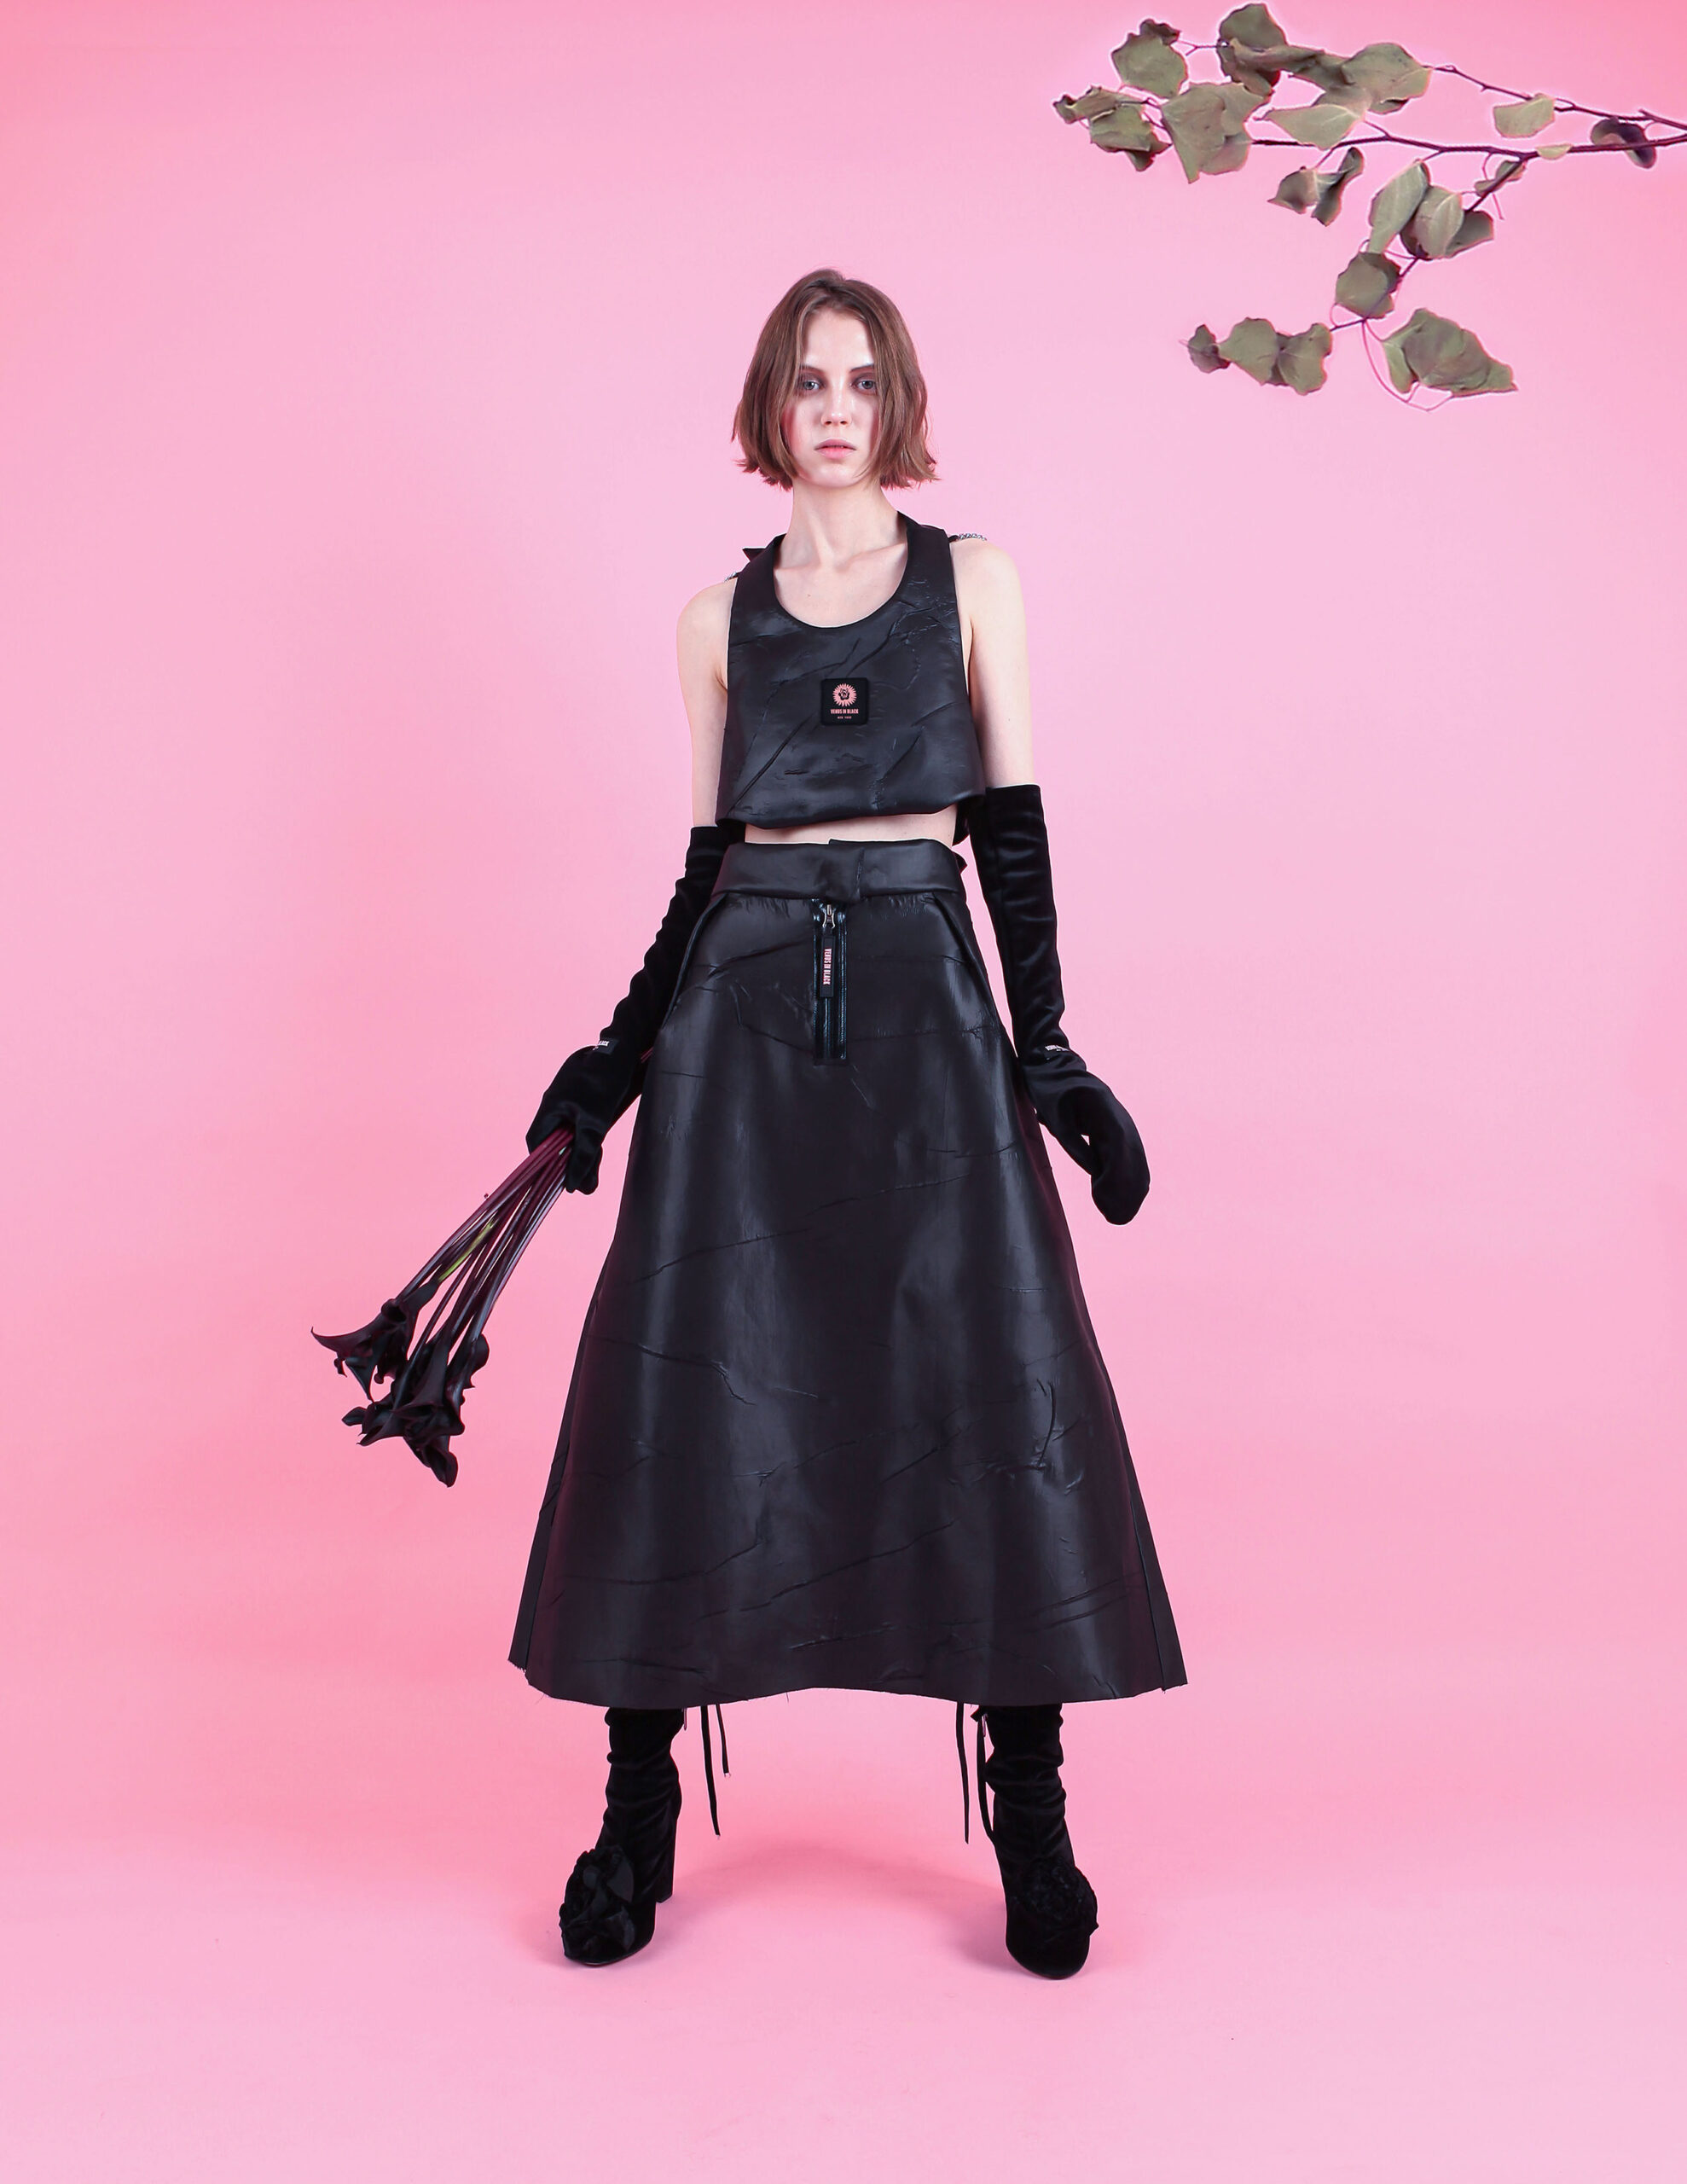 venus in black by moon chang | meet the designer – Schön! Magazine